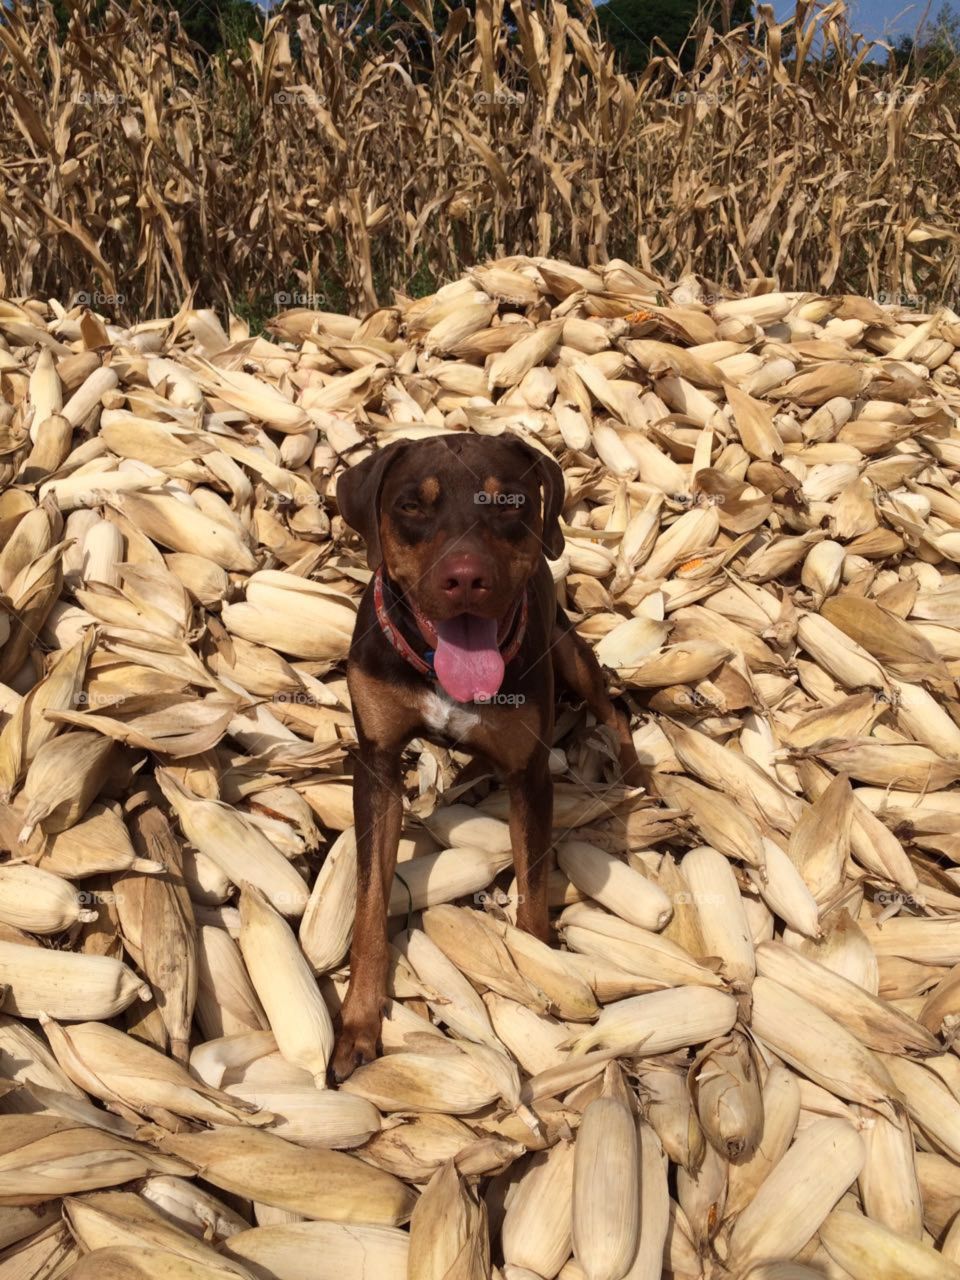 Catahoula leopard dog in a pile of corn. I conquered corn!